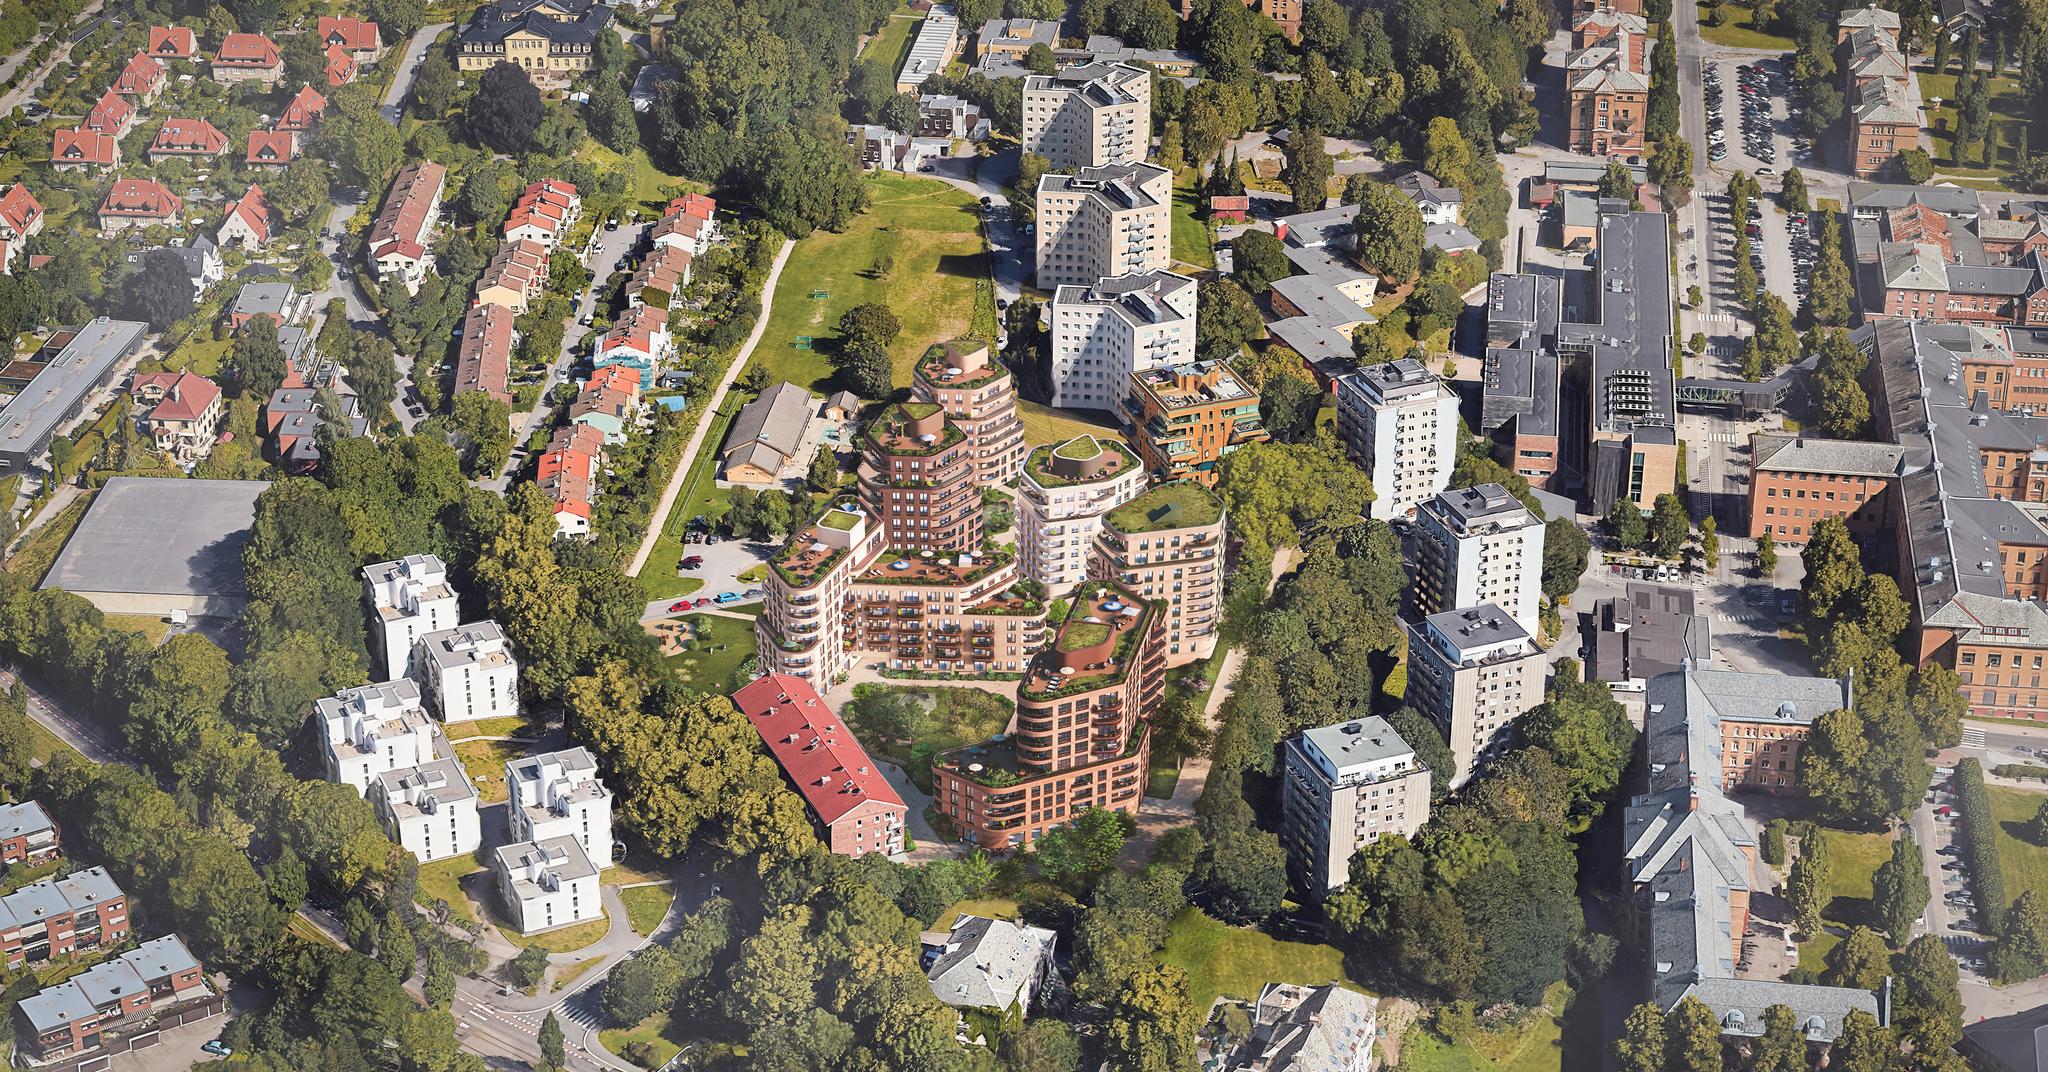 300 nye boliger og høyder opptil ti etasjer. Det er den nye planen for Ullevål sykehus’ nærmeste nabo.